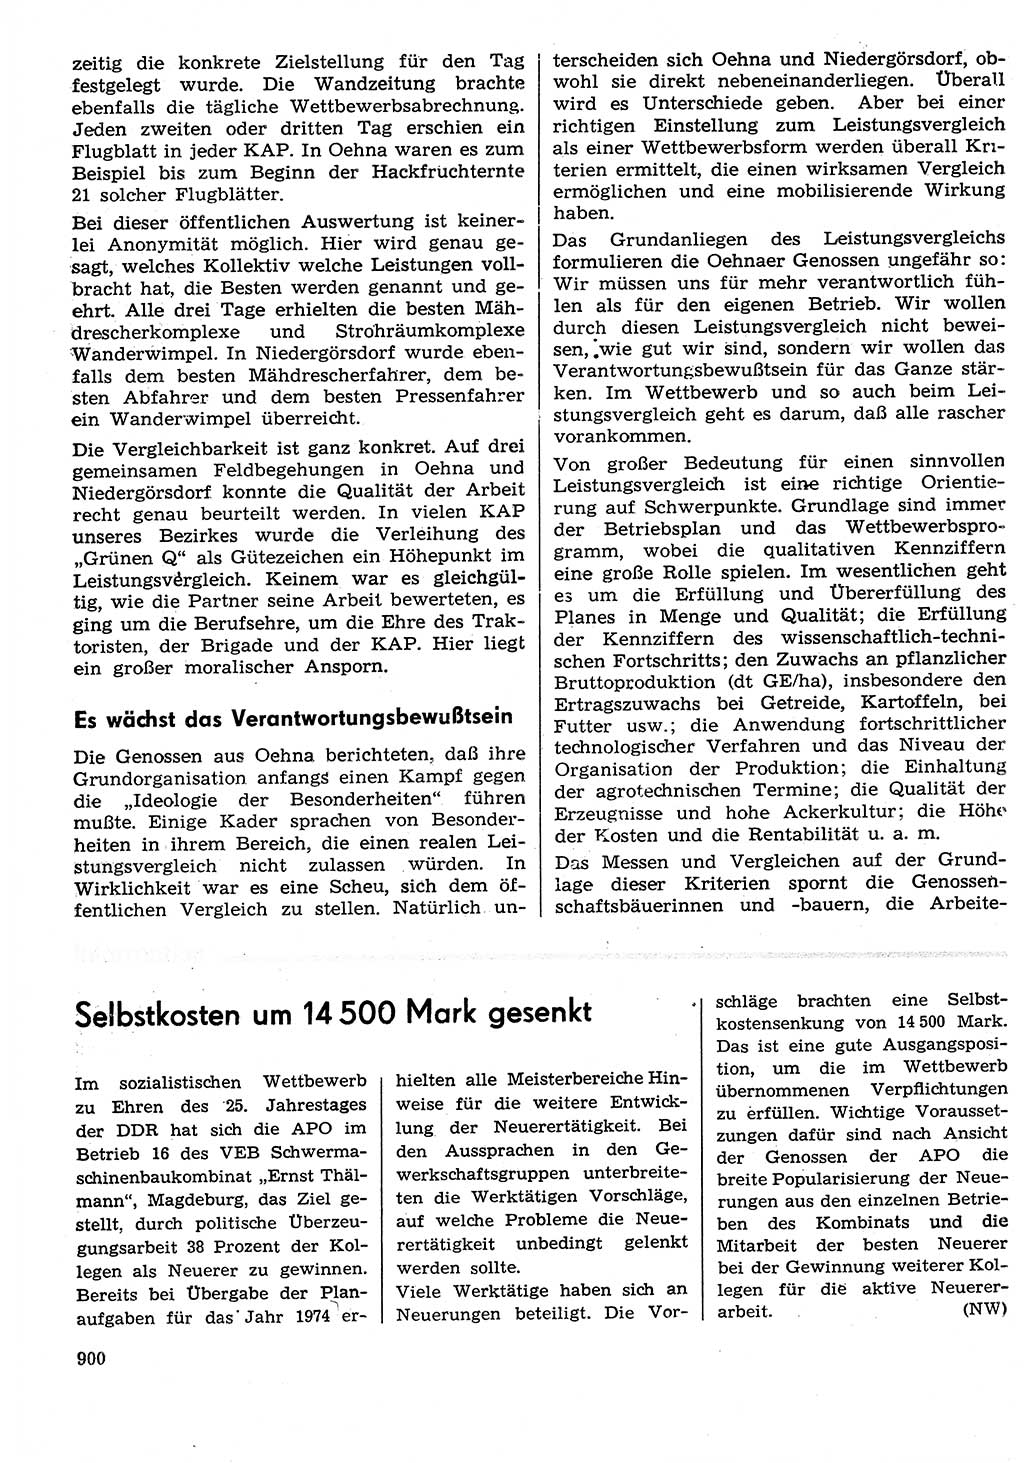 Neuer Weg (NW), Organ des Zentralkomitees (ZK) der SED (Sozialistische Einheitspartei Deutschlands) für Fragen des Parteilebens, 29. Jahrgang [Deutsche Demokratische Republik (DDR)] 1974, Seite 900 (NW ZK SED DDR 1974, S. 900)